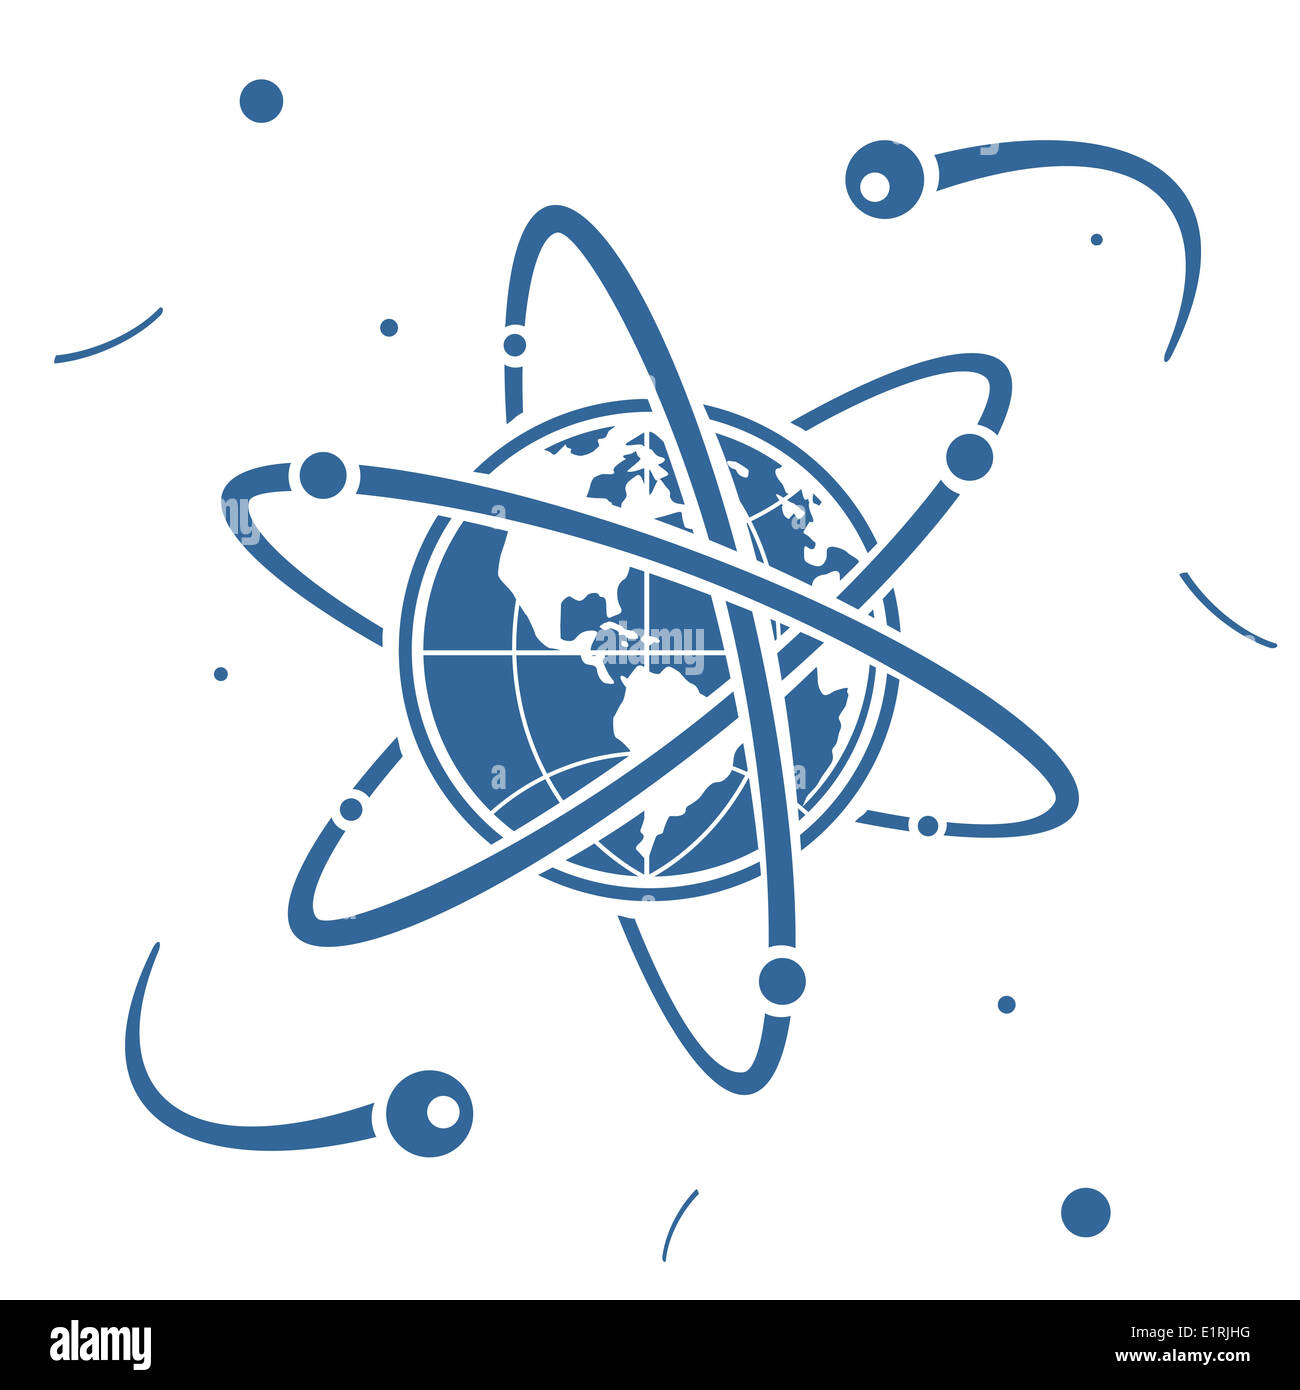 Planète symbole dans l'espace Banque D'Images